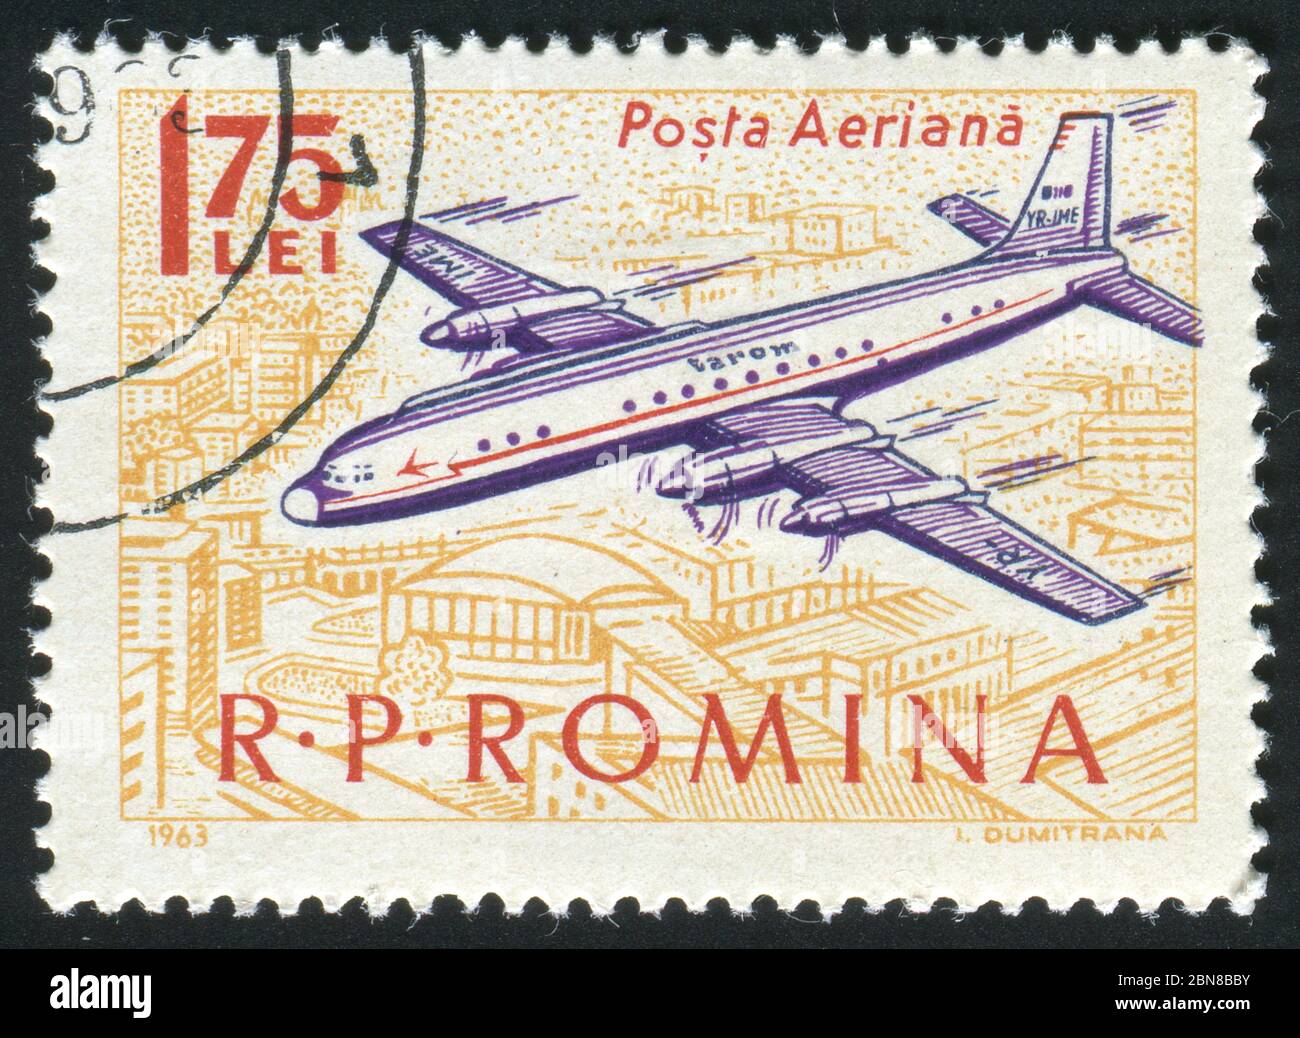 ROMANIA - CIRCA 1963: The plane flies over a city, circa 1963. Stock Photo